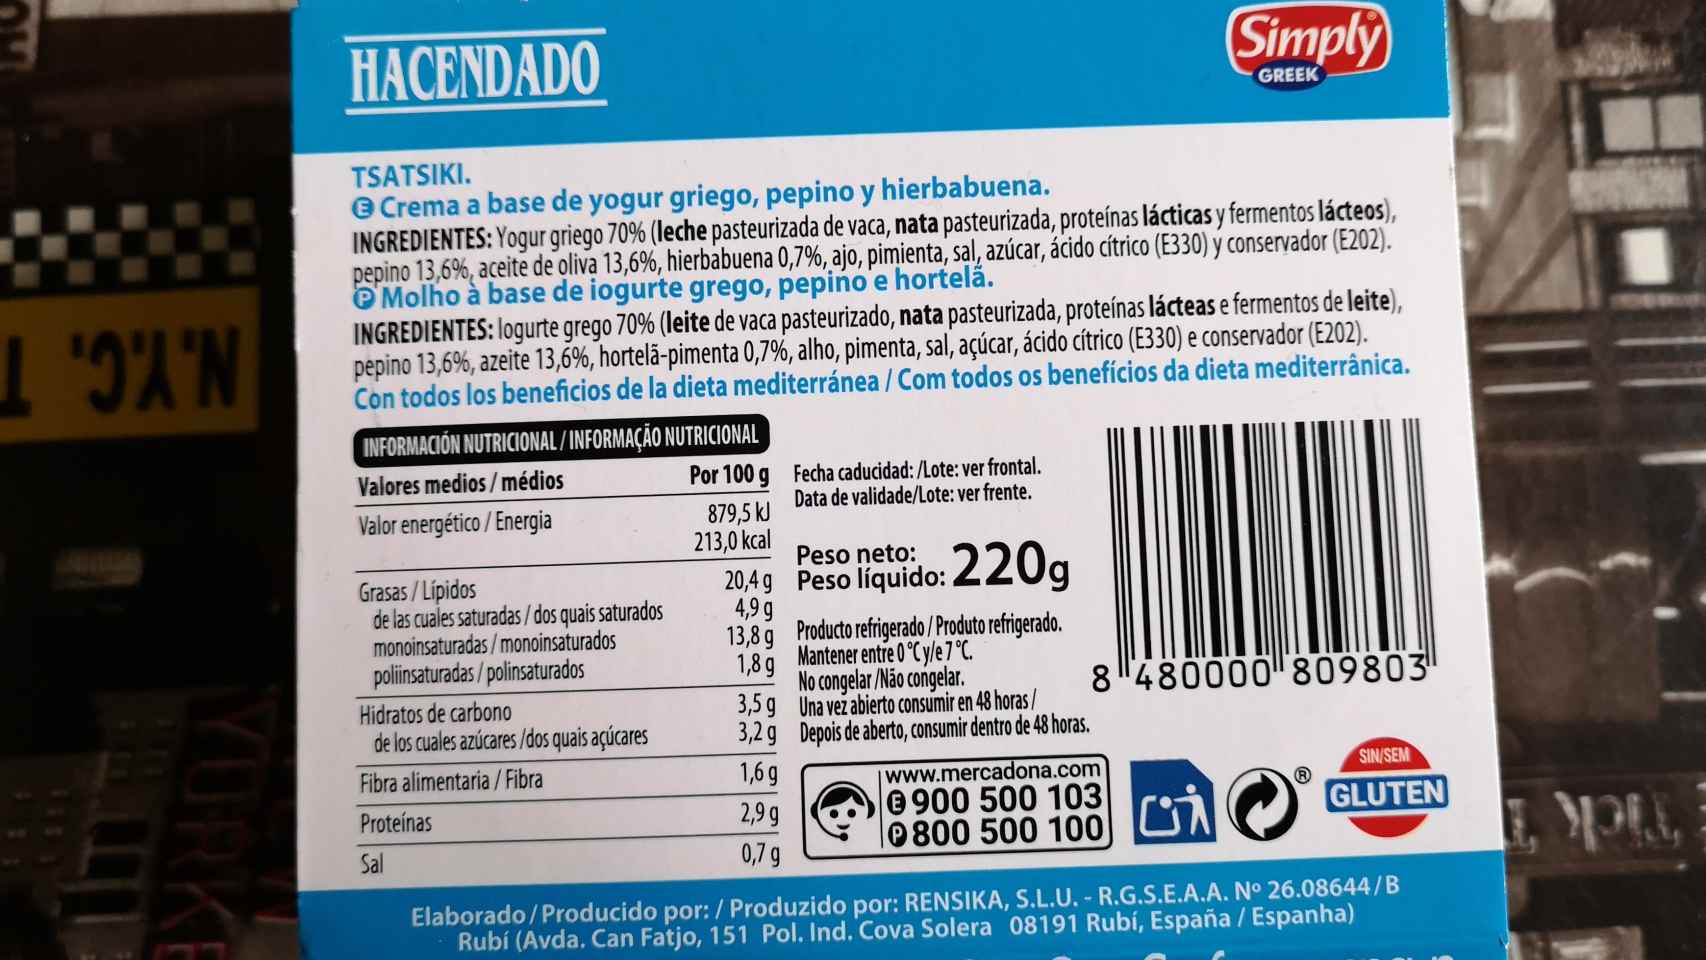 La información nutricional de la crema de yogur griego de Mercadona.